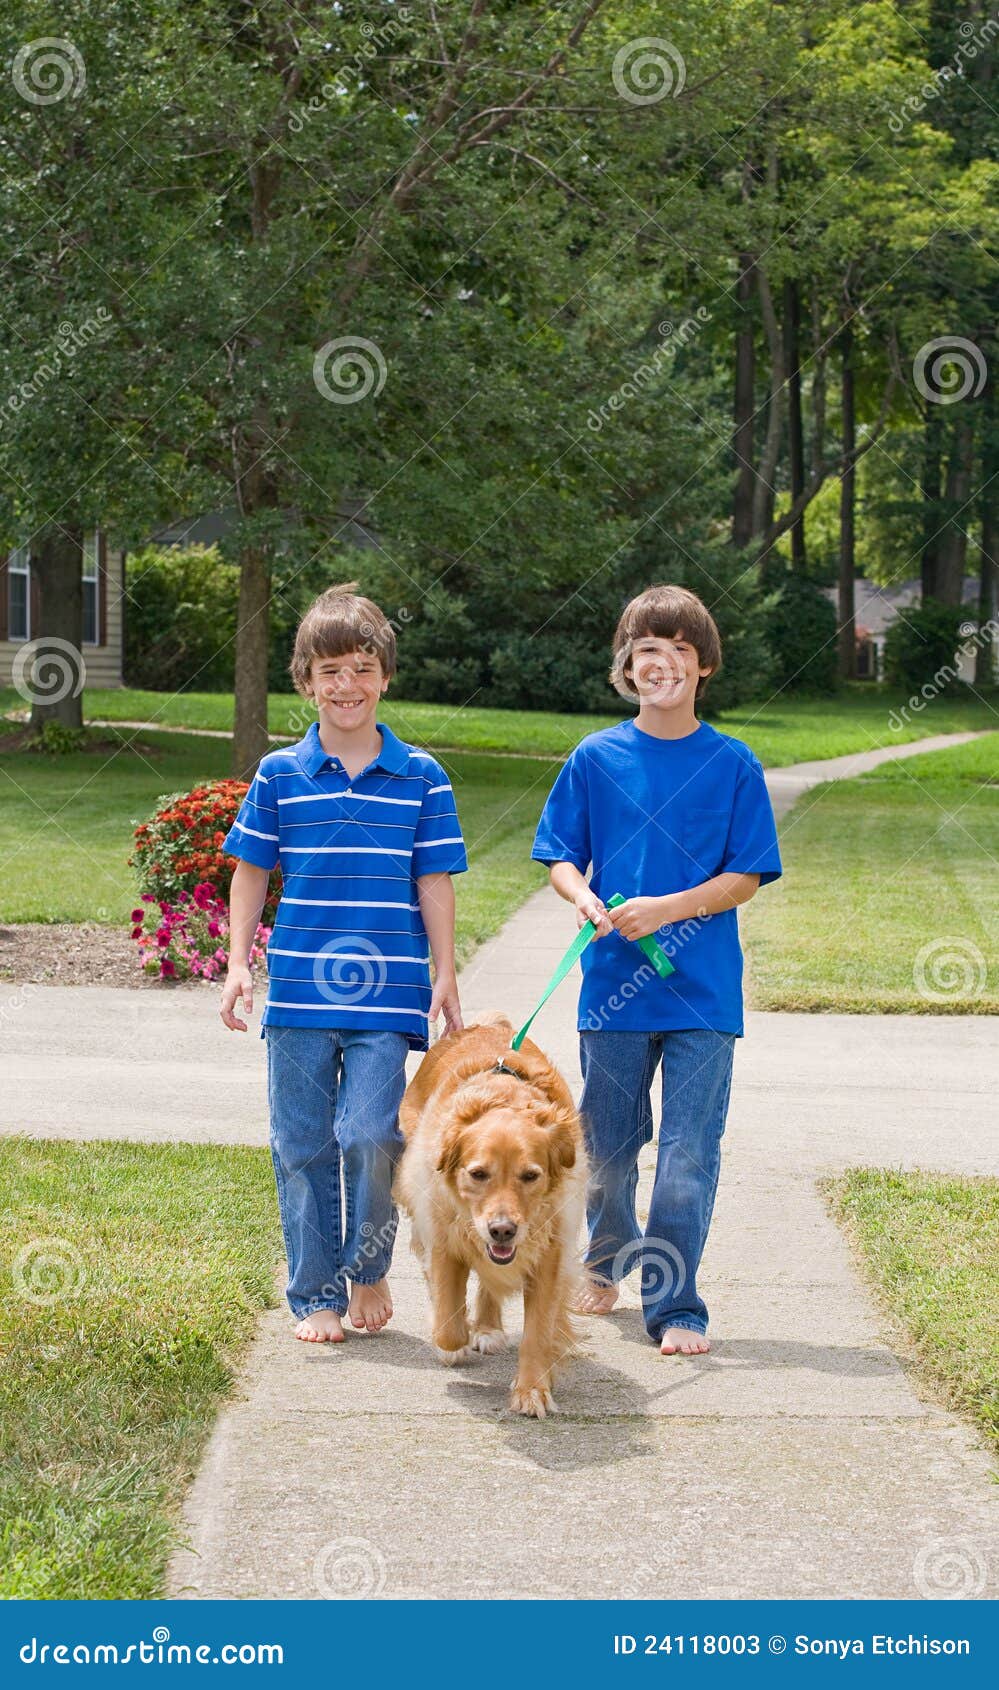 kids walking dog